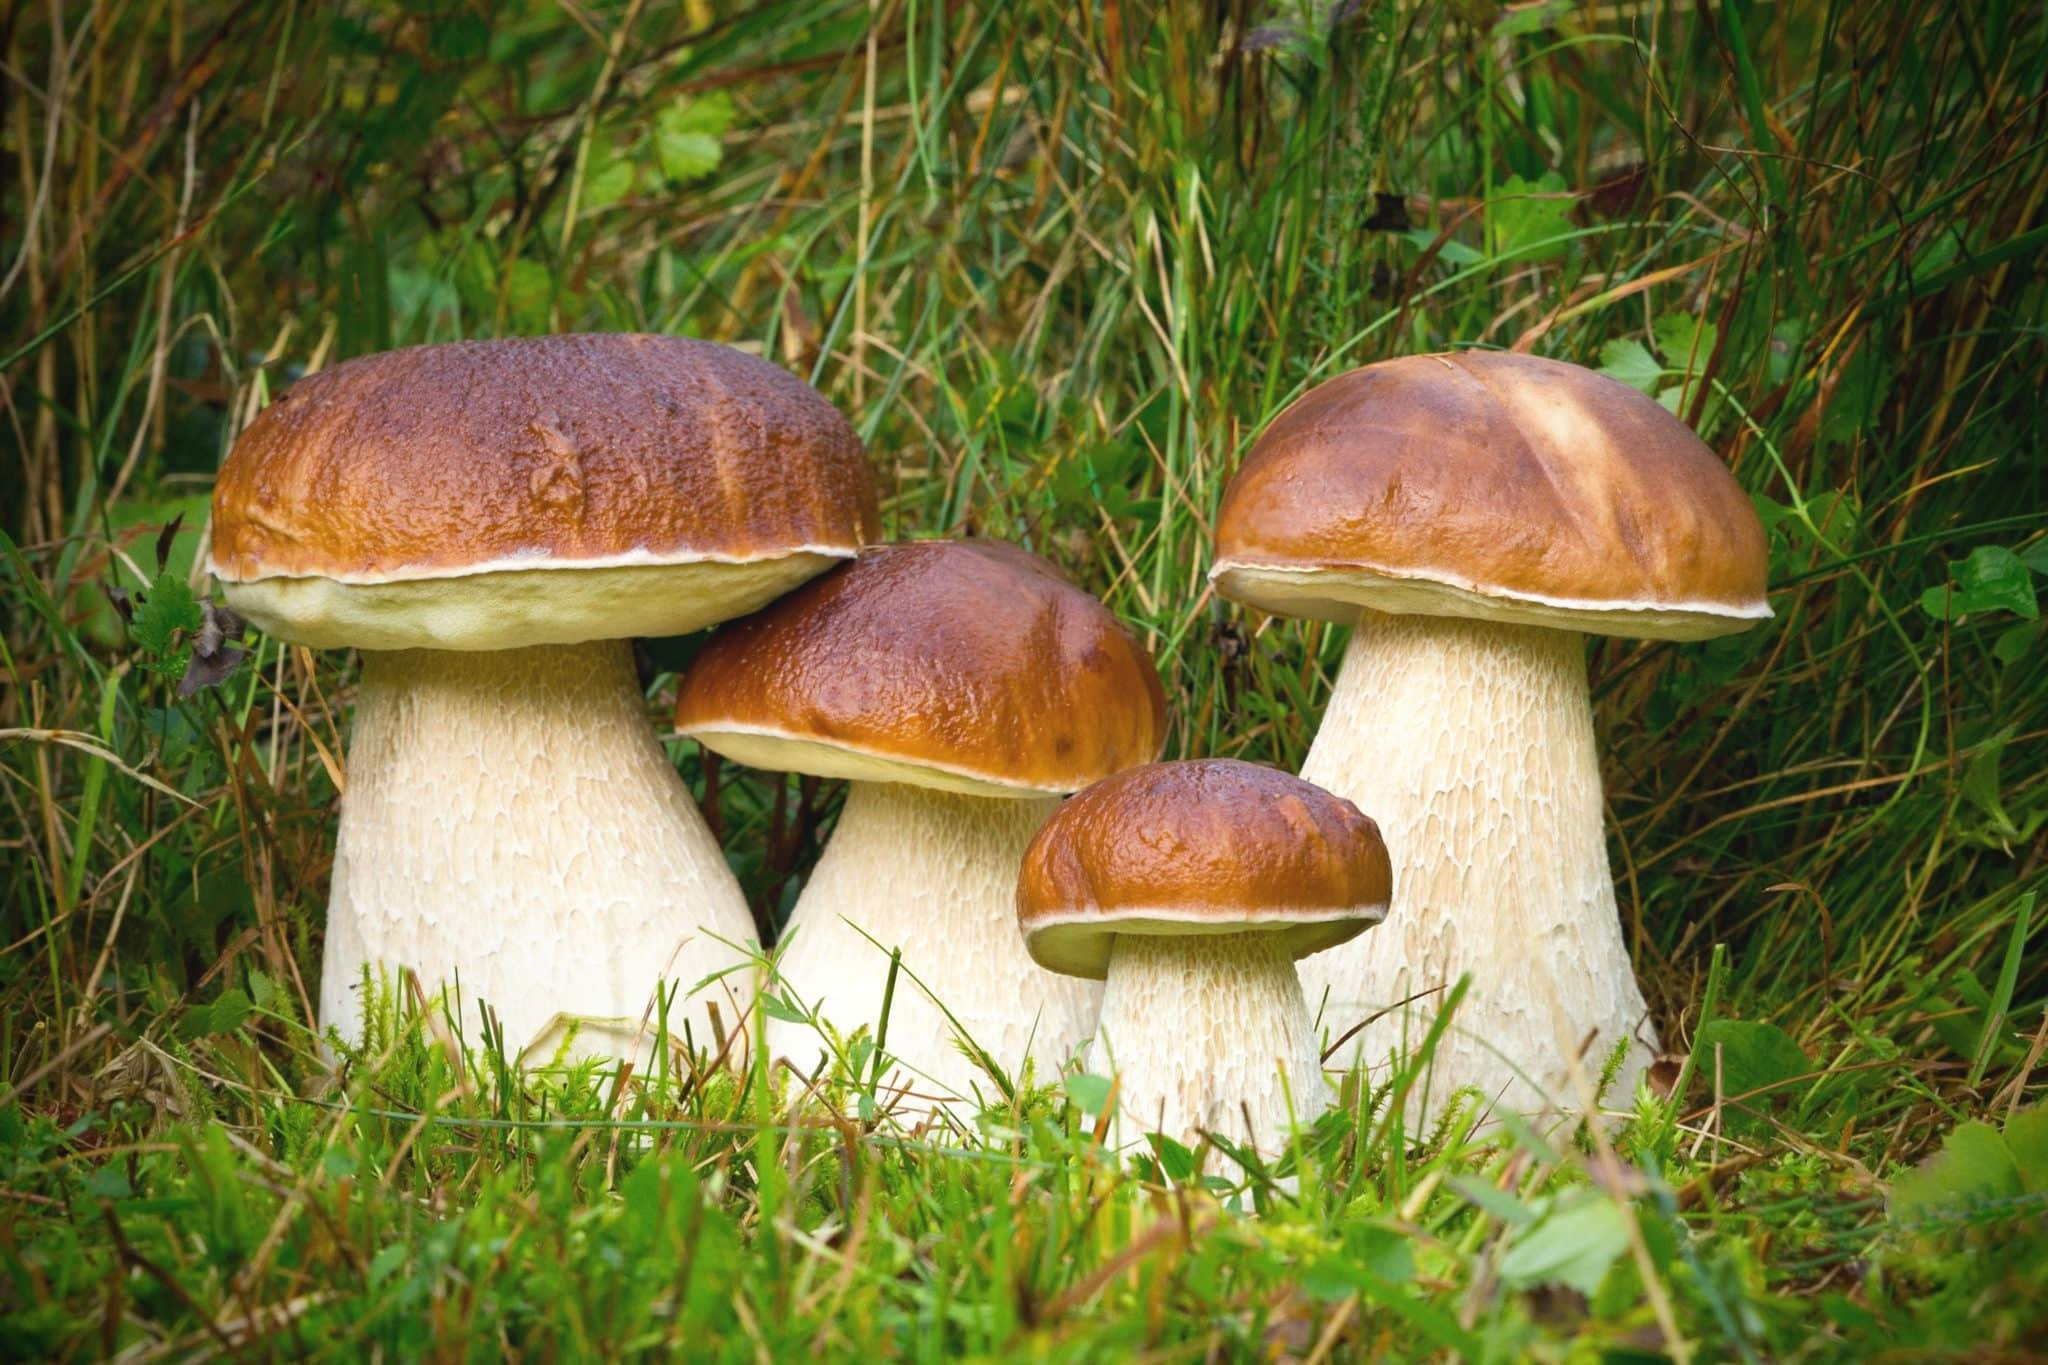 Белые грибы помогают худеть